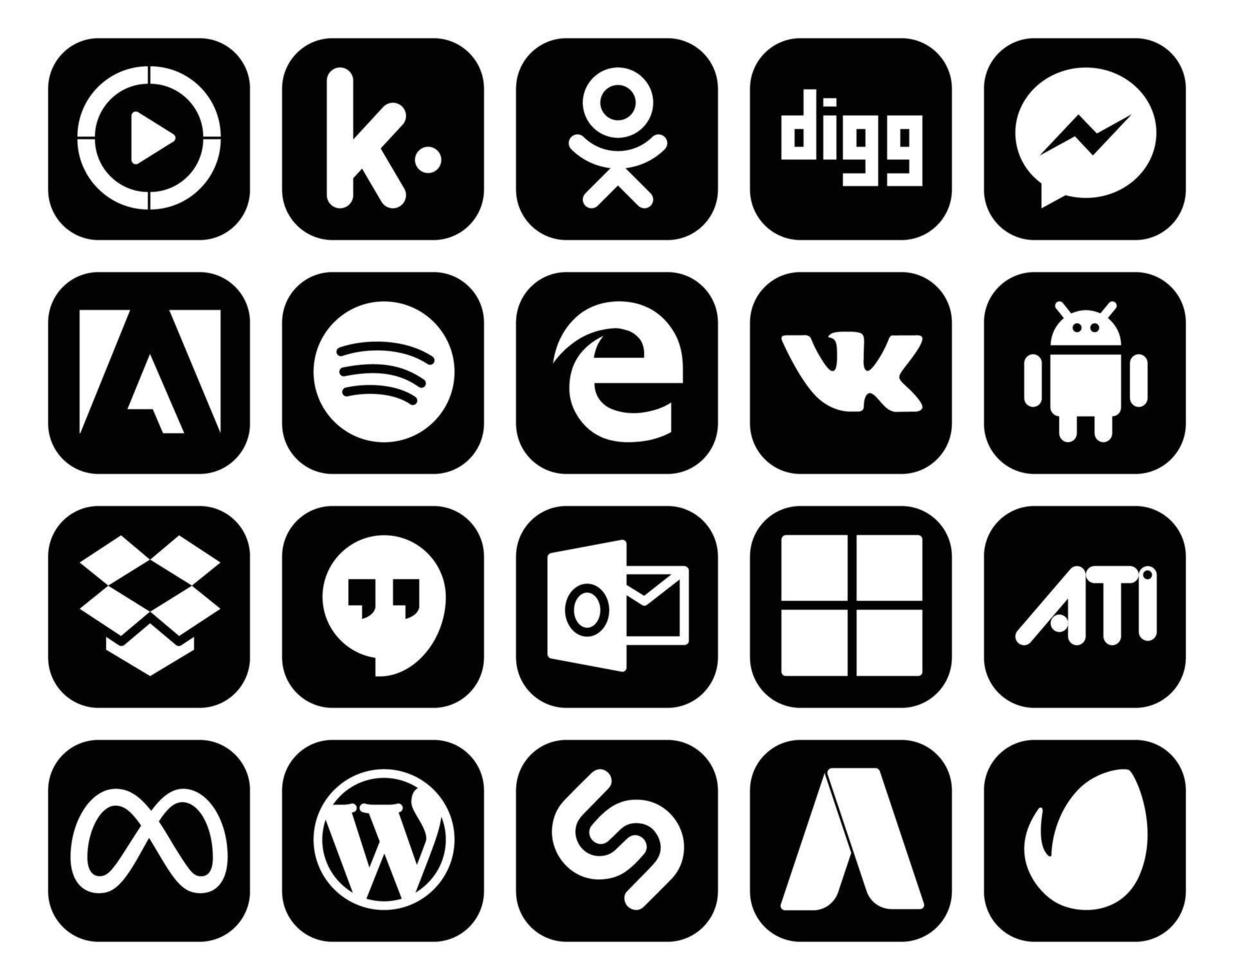 paquete de 20 íconos de redes sociales que incluye facebook ati edge microsoft hangouts vector